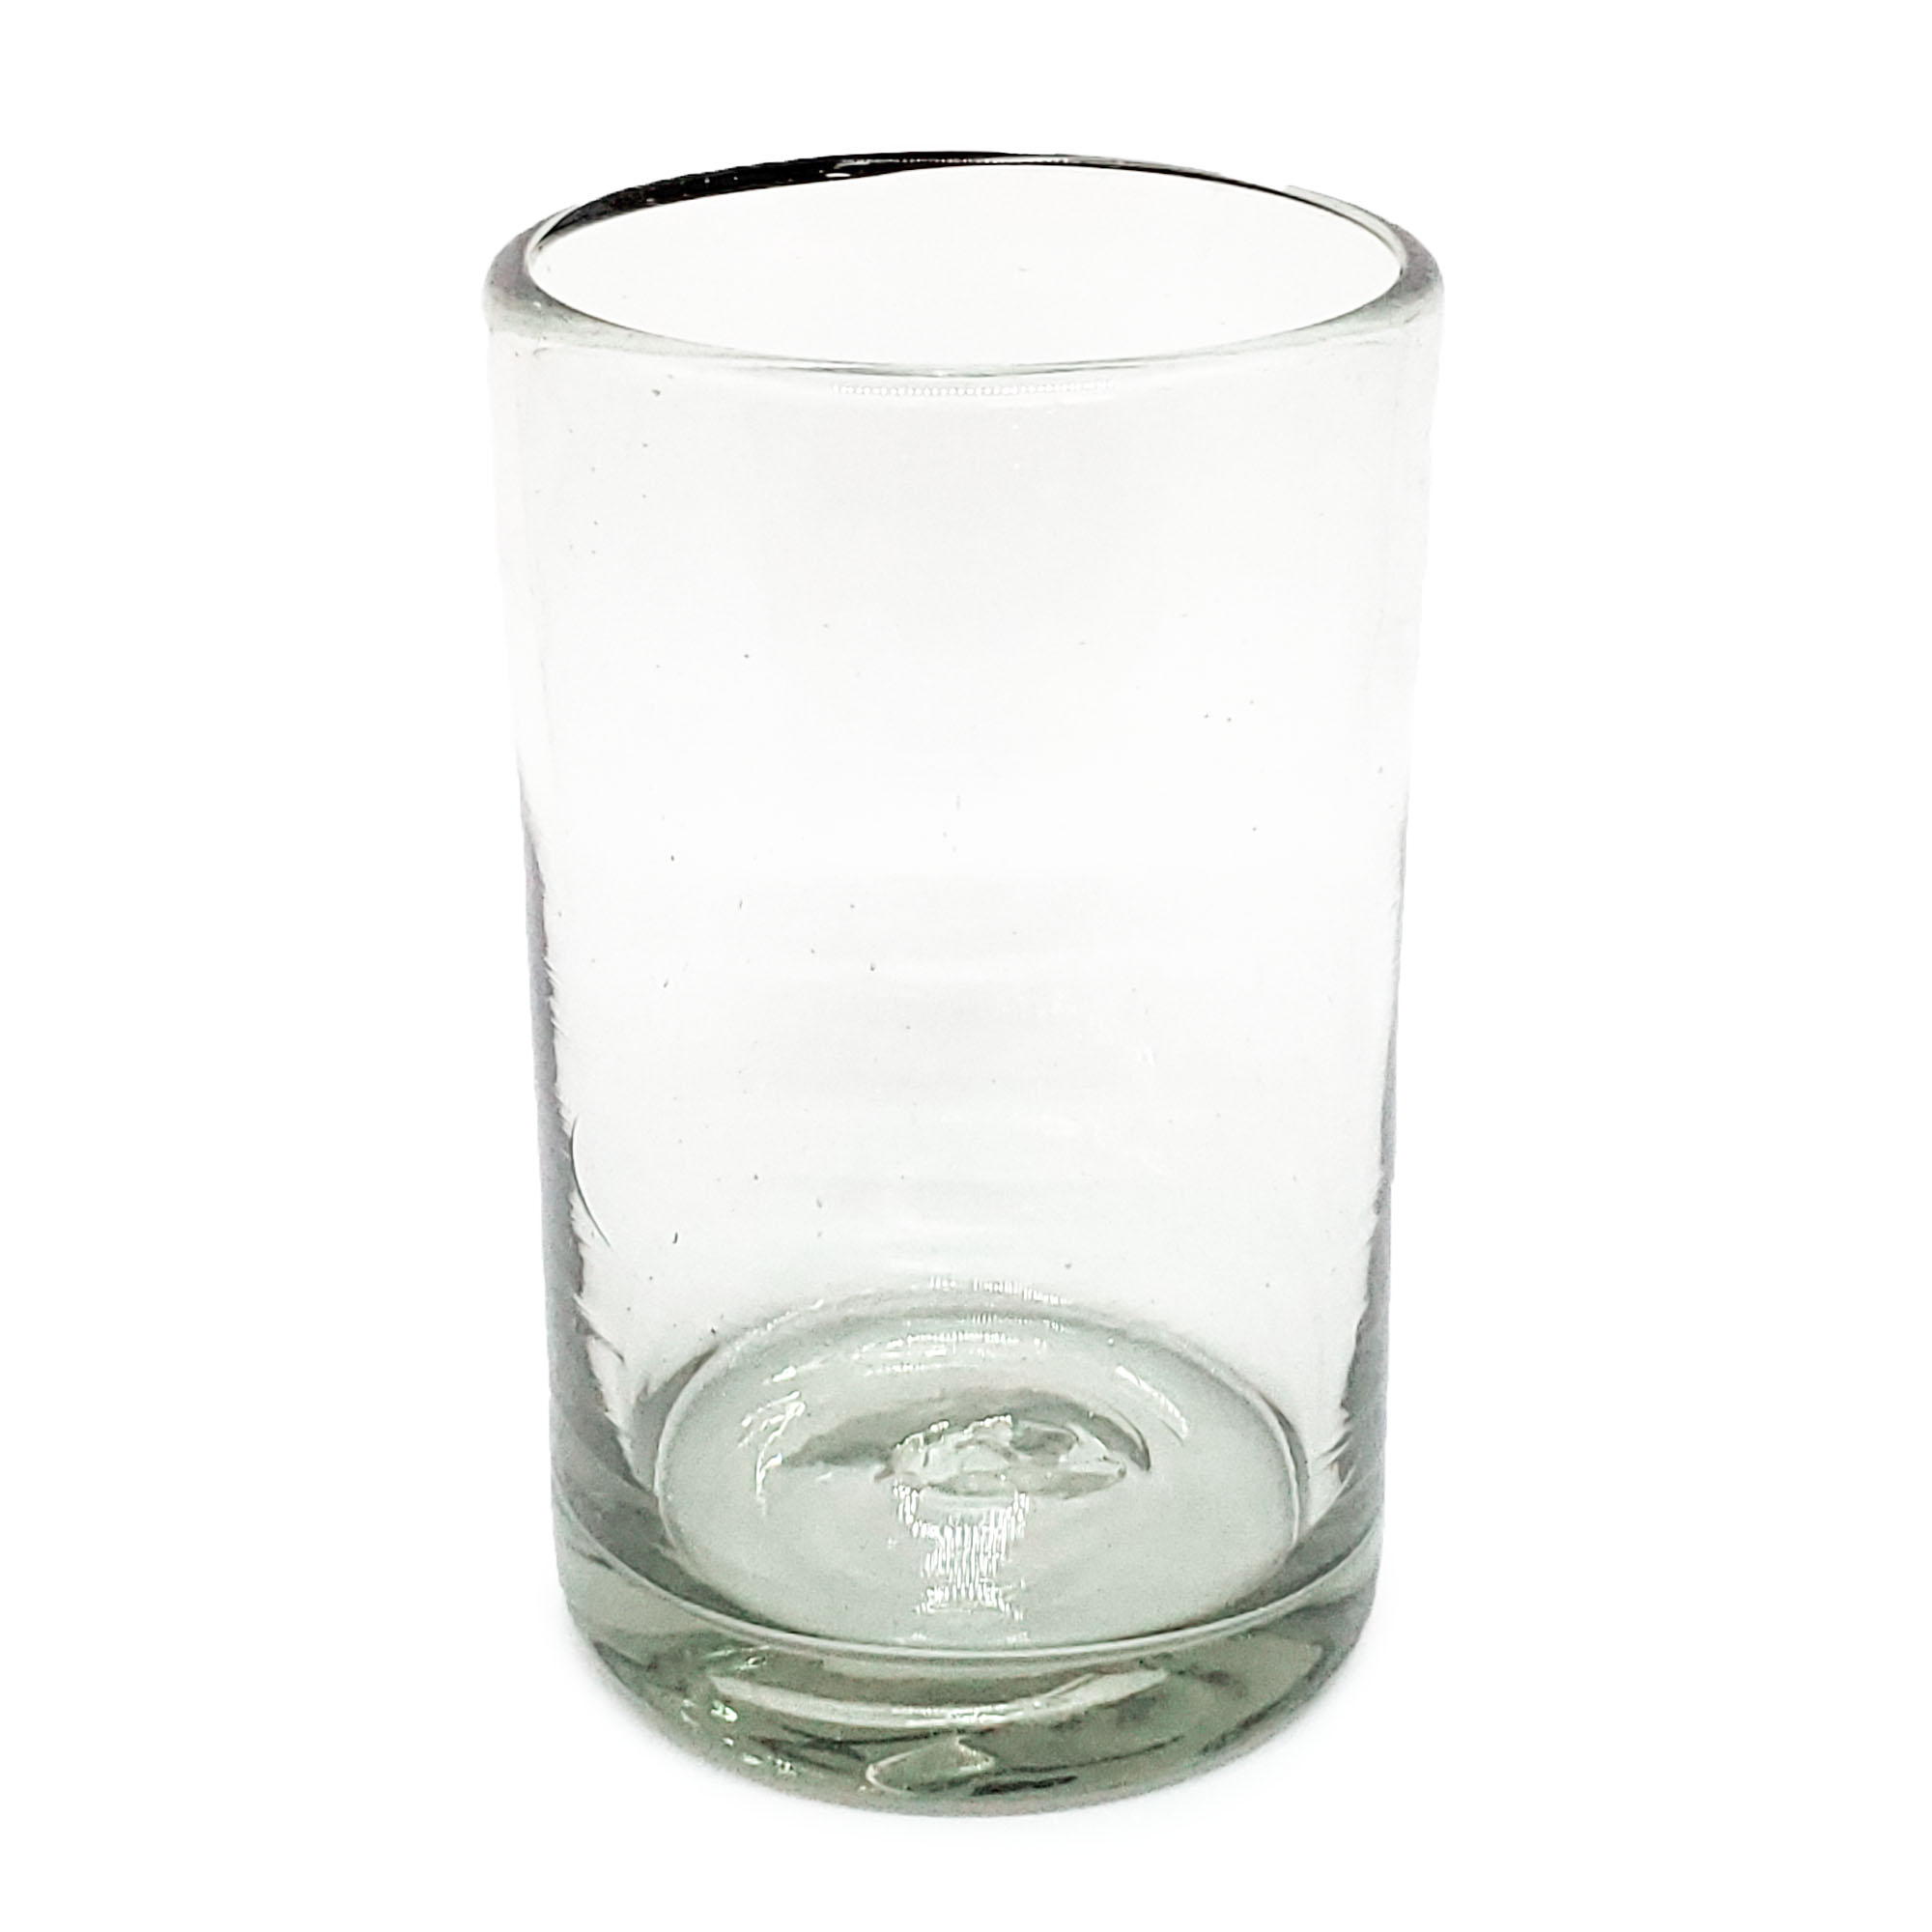 Color Transparente / Juego de 6 vasos grandes transparentes / Éstos artesanales vasos le darán un toque clásico a su bebida favorita.